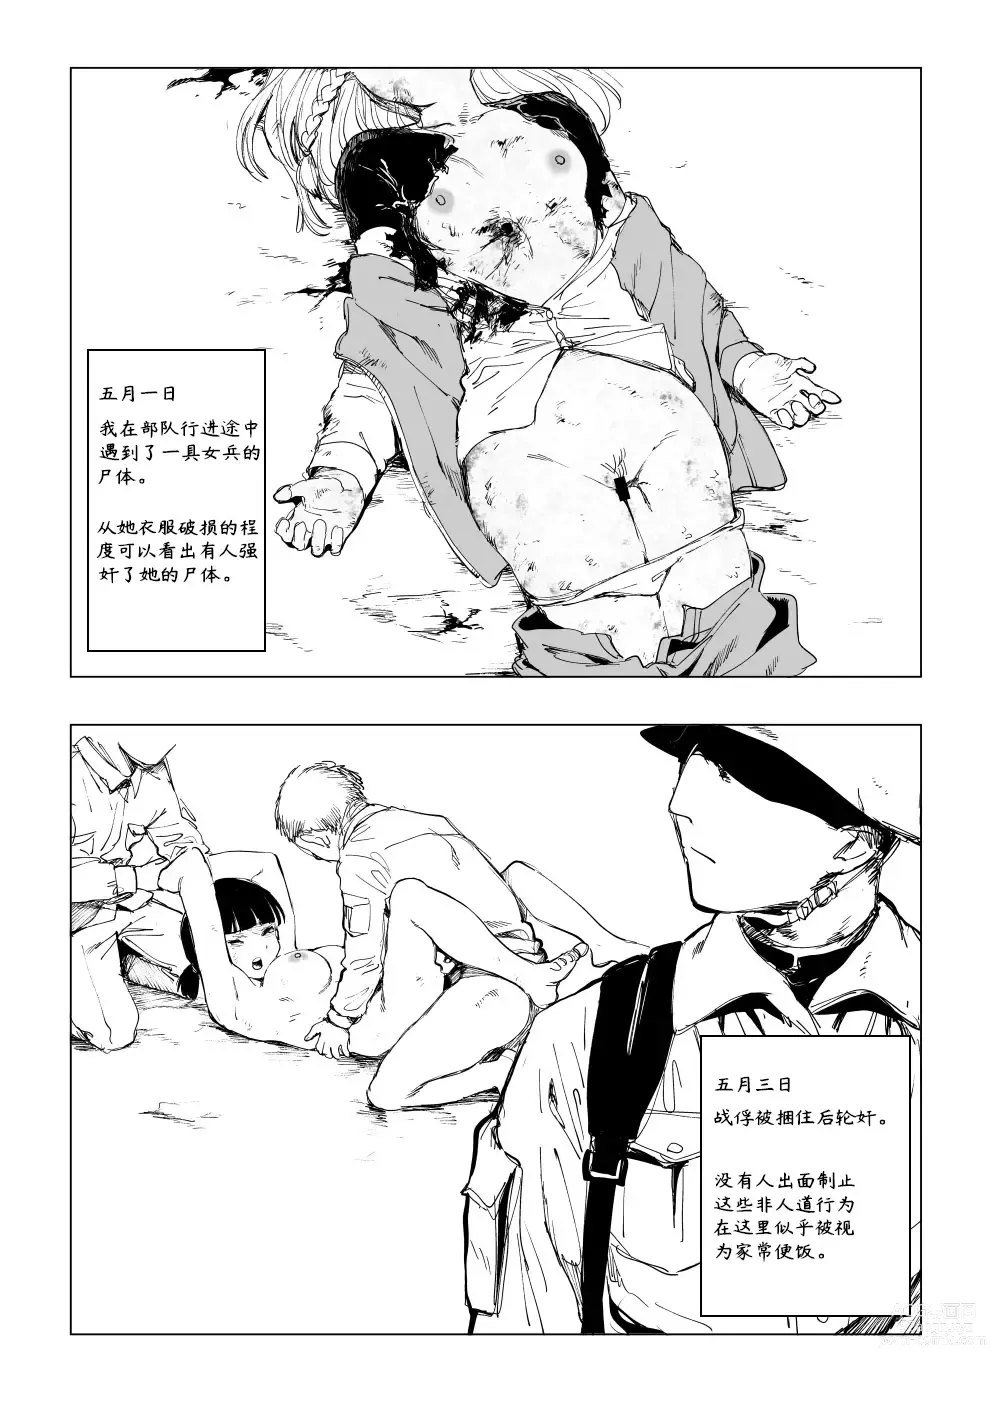 Page 2 of doujinshi 「凋谢于战场」《一等兵布莱乌的回忆录 其一》